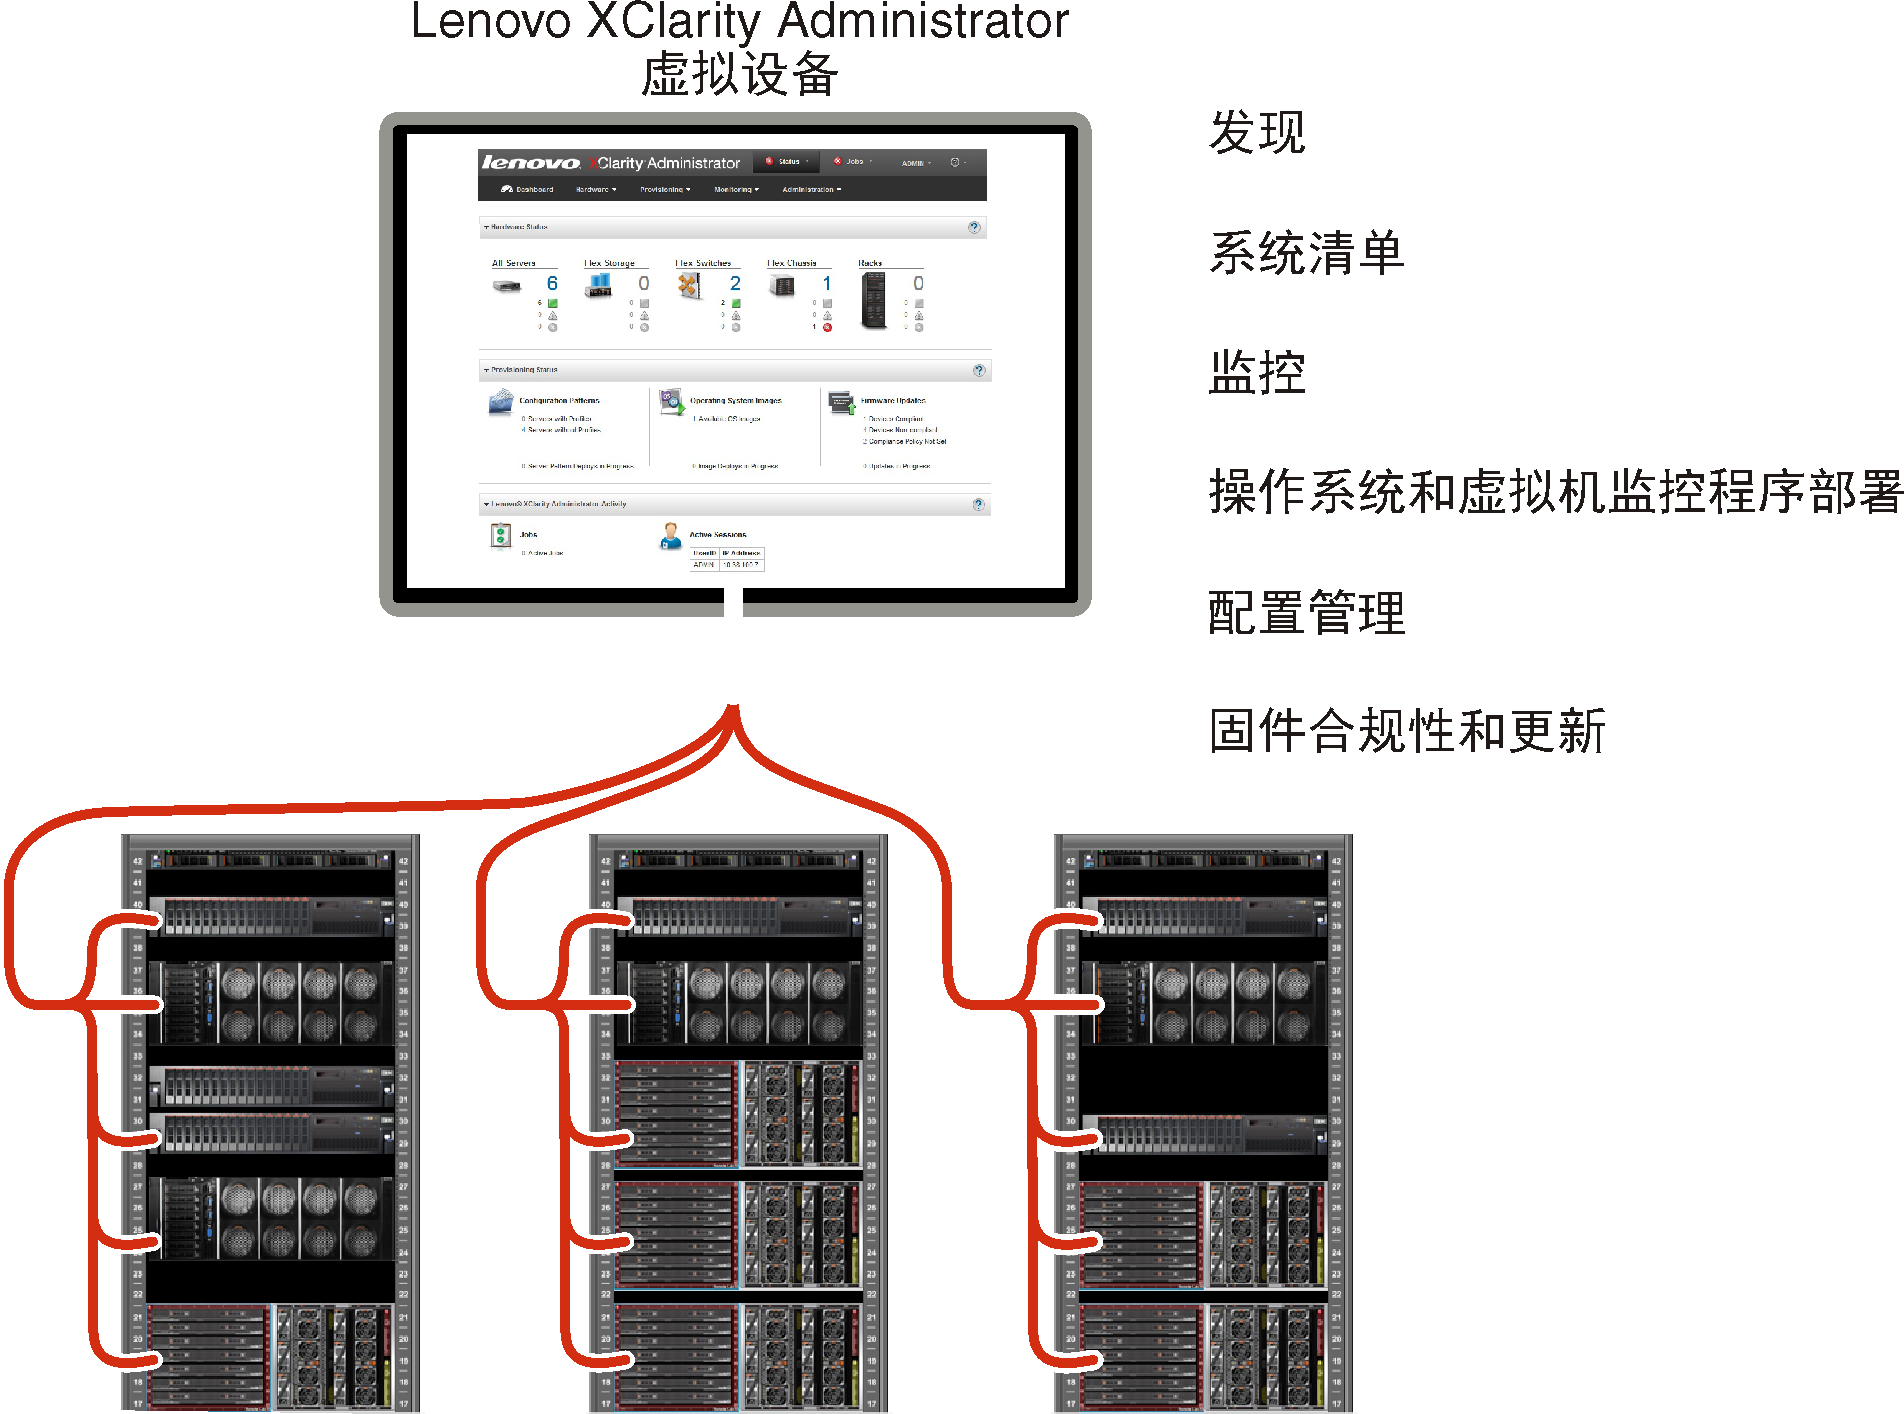 显示管理多个机箱的 Lenovo XClarity Administrator 并列出 Lenovo XClarity Administrator 主要功能的图形。